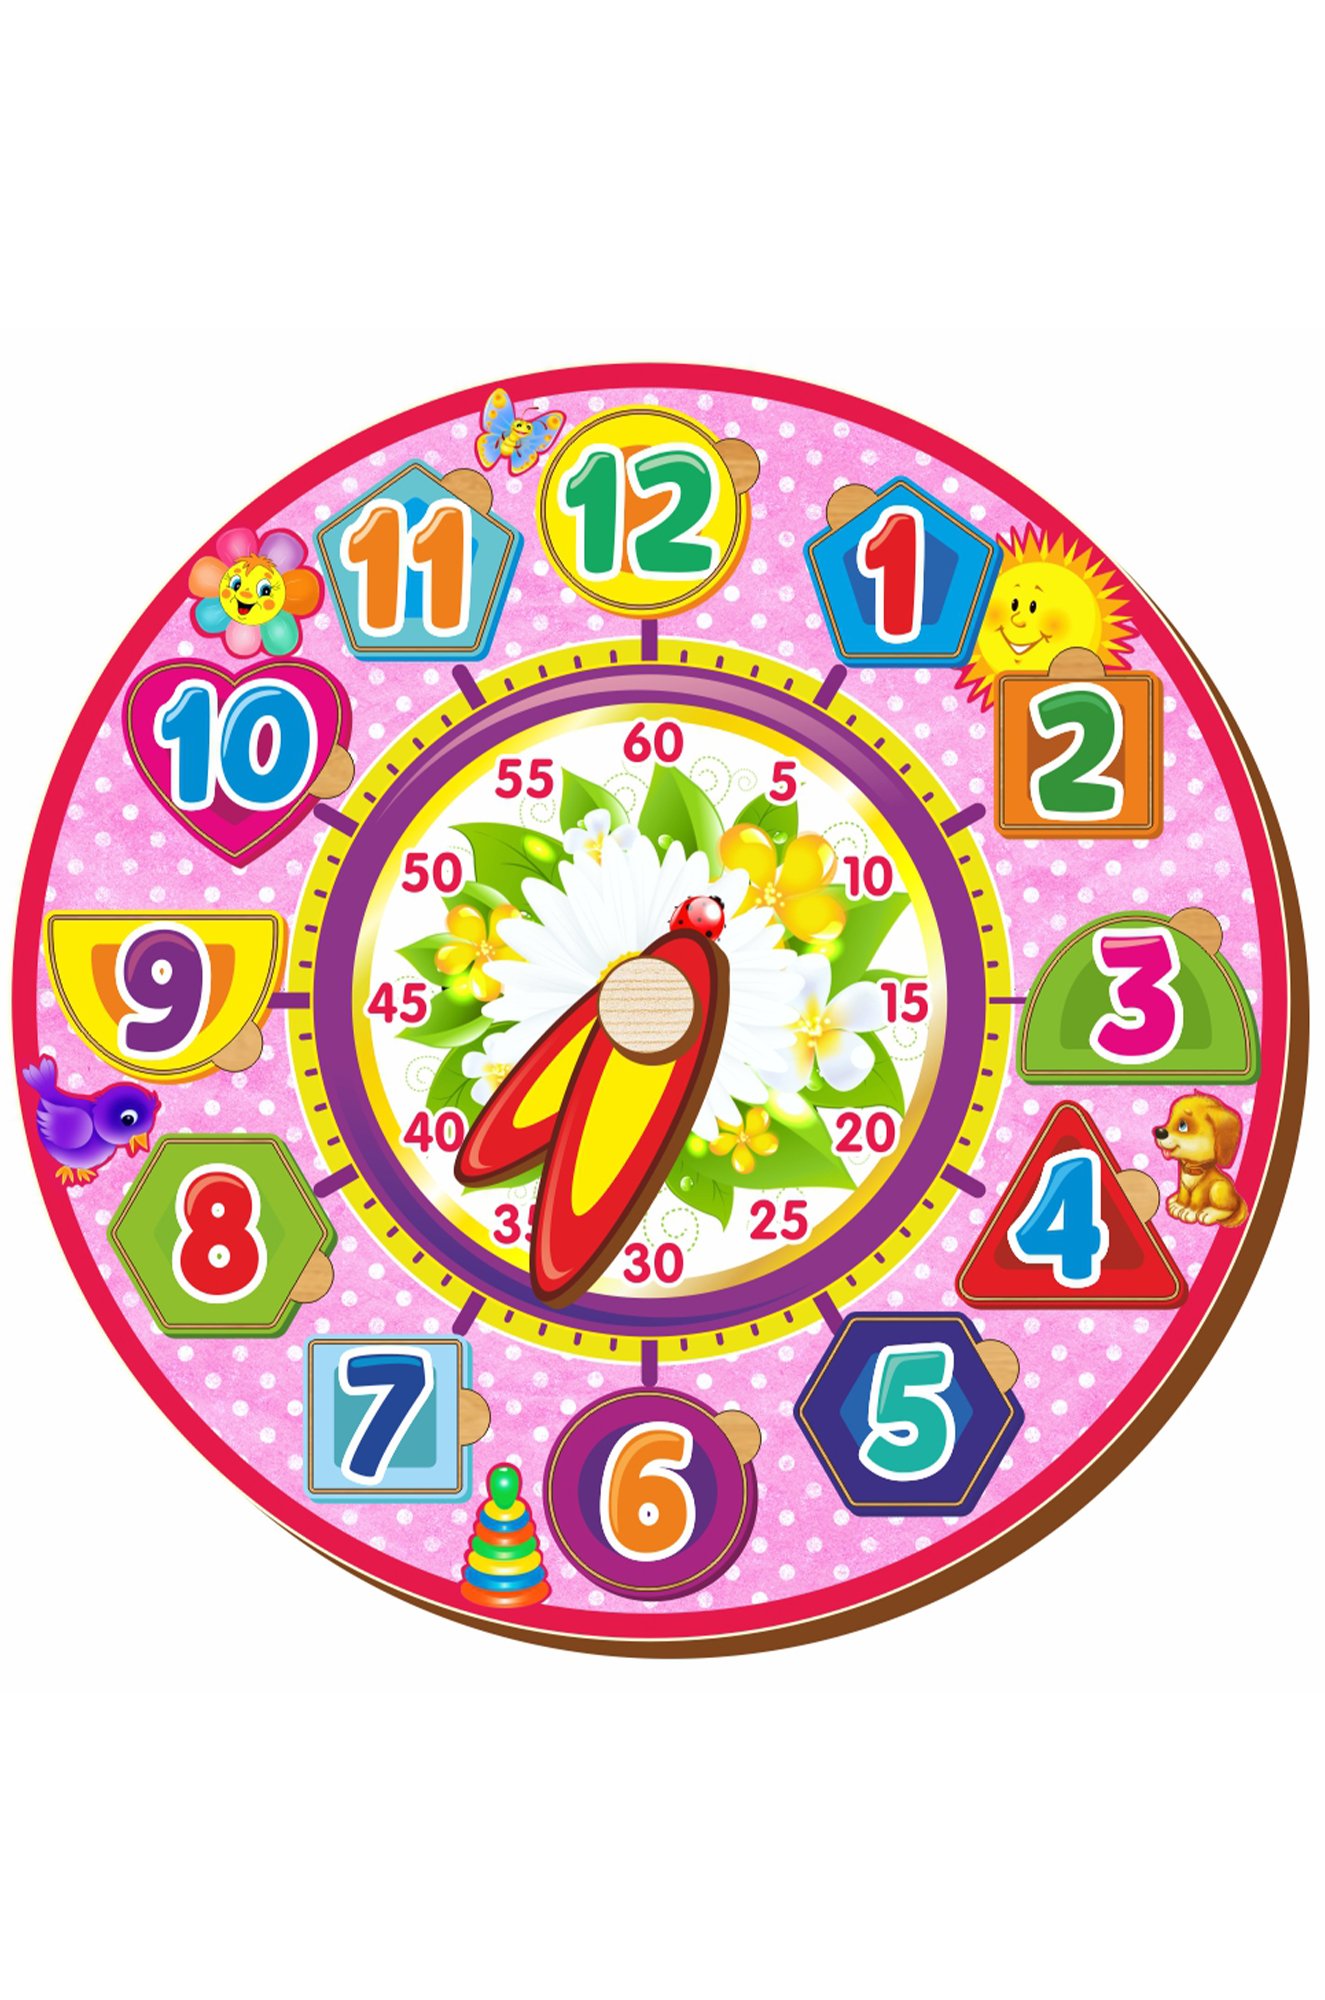 Циферблат часов для обучения. Рамка-вкладыш Woodland часы 4 (094204), 12 дет.. Игрушечные часы. Макет часов. Часы обучающие для детей.